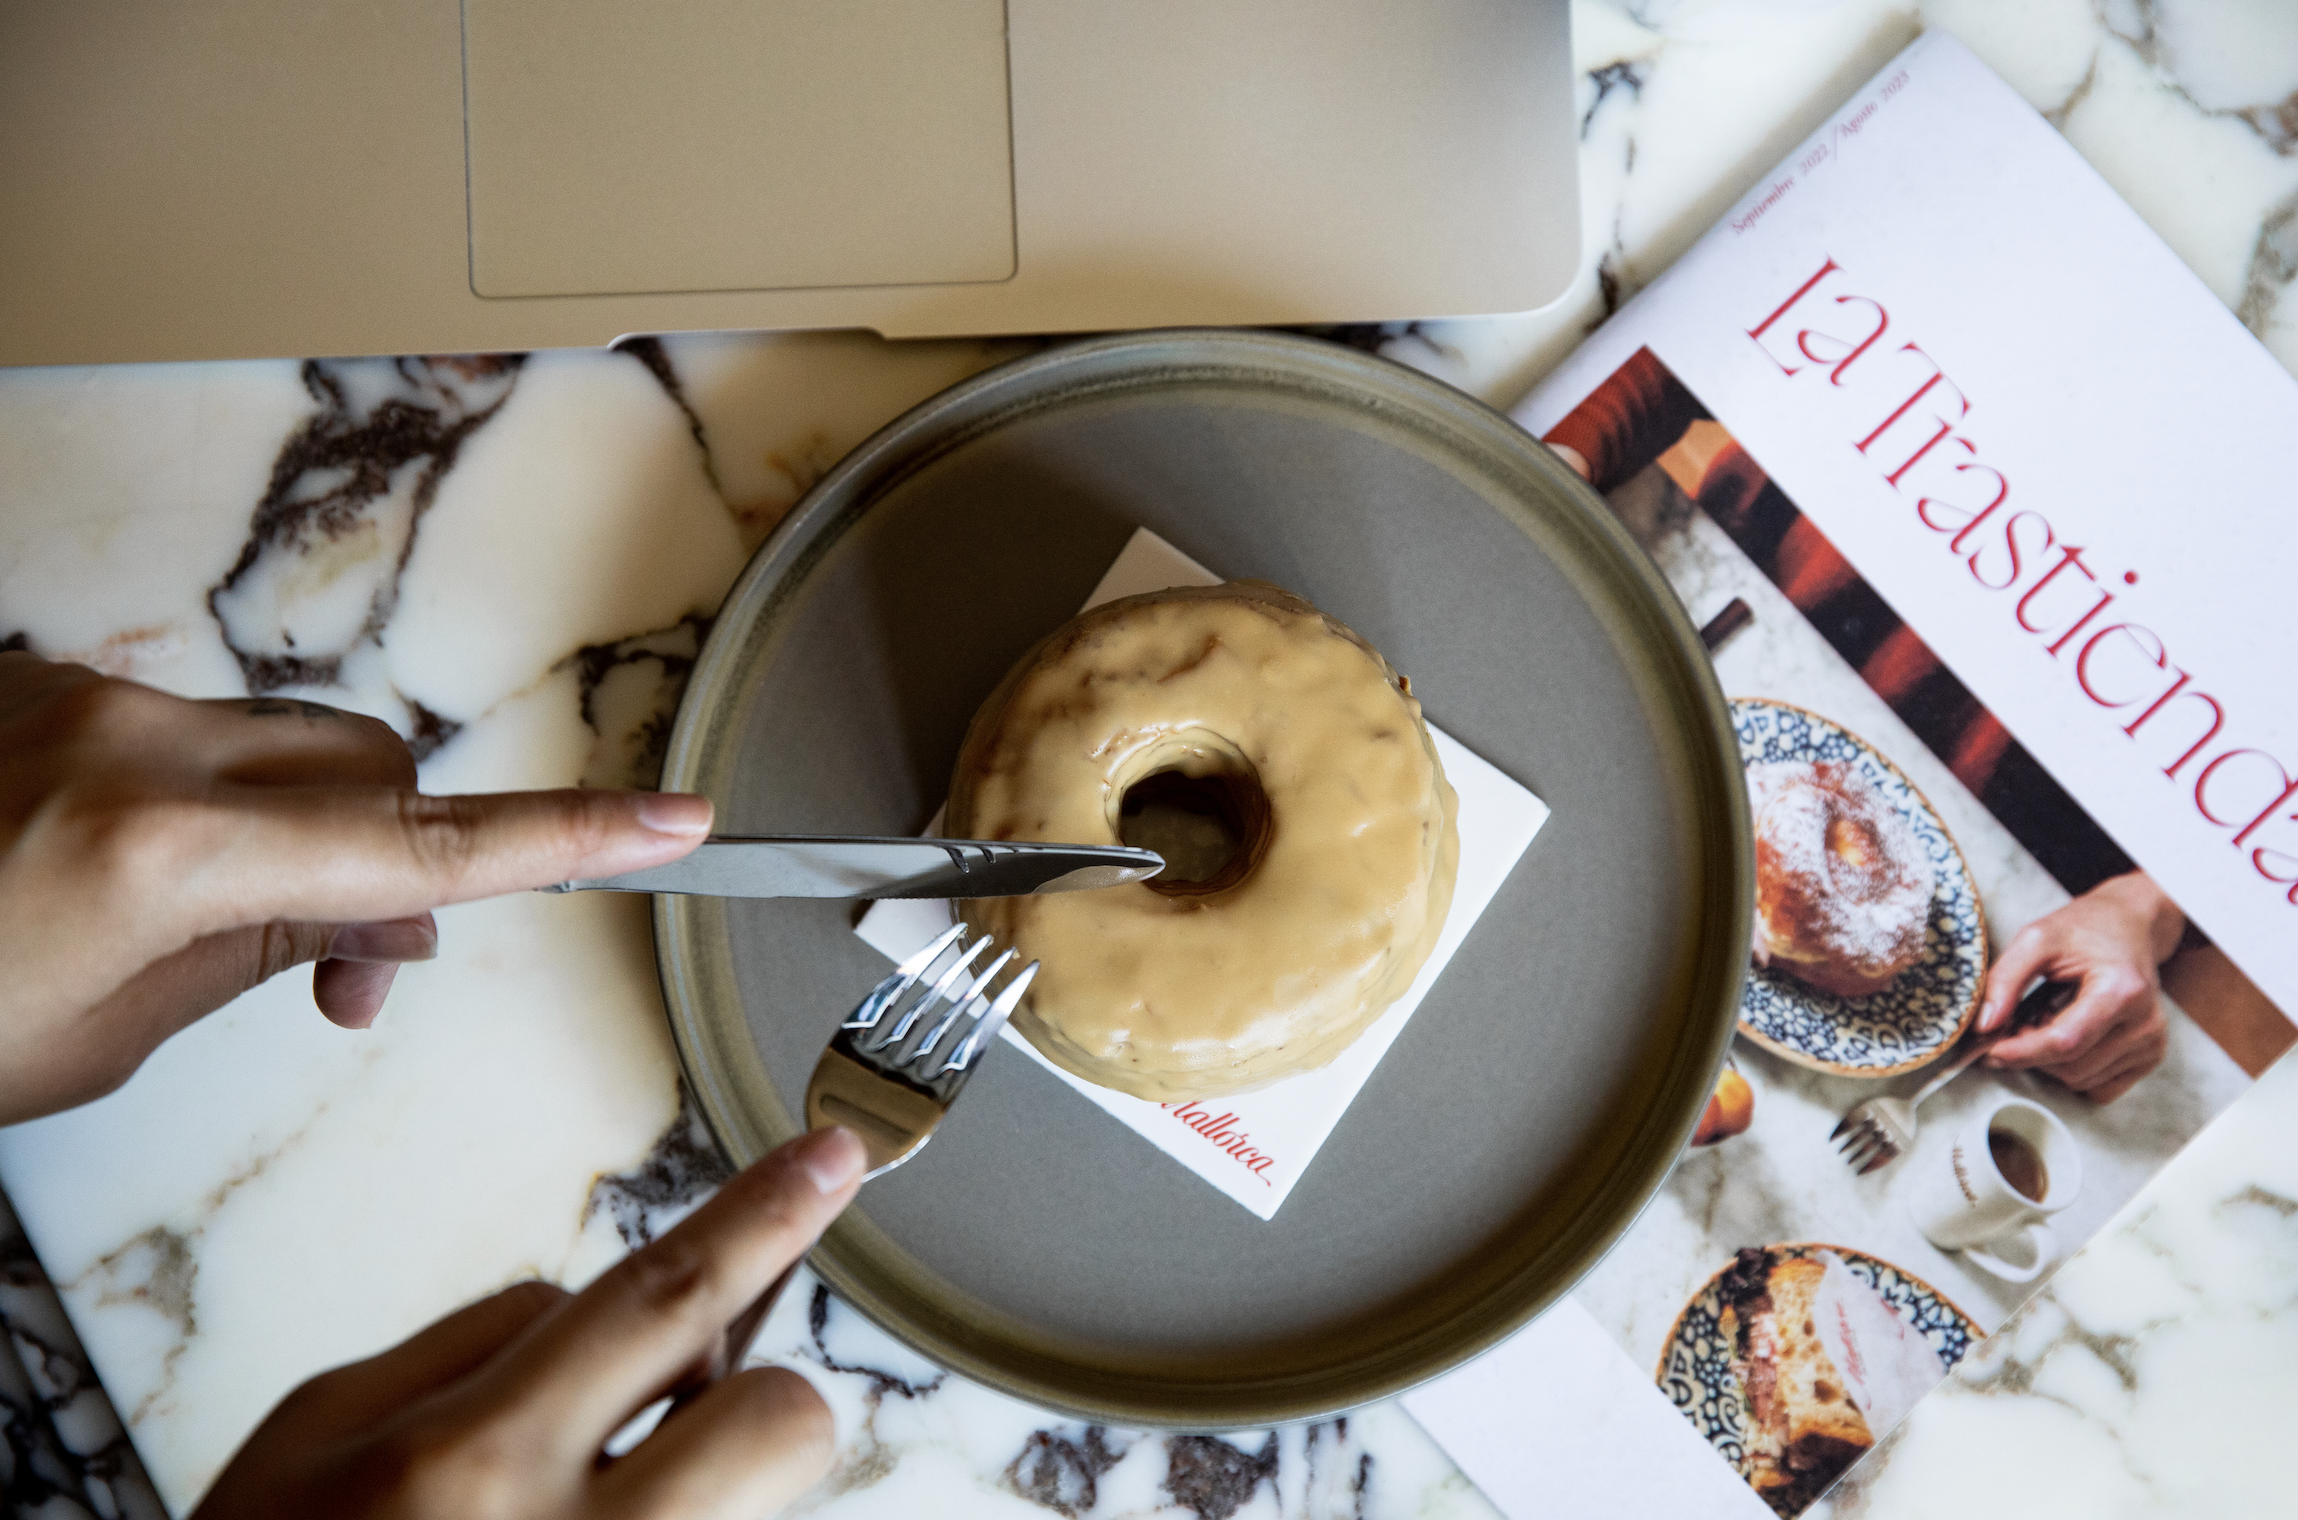 El éxito del ‘cronut’ llega a Pastelería Mallorca en forma de una edición limitada muy dulce